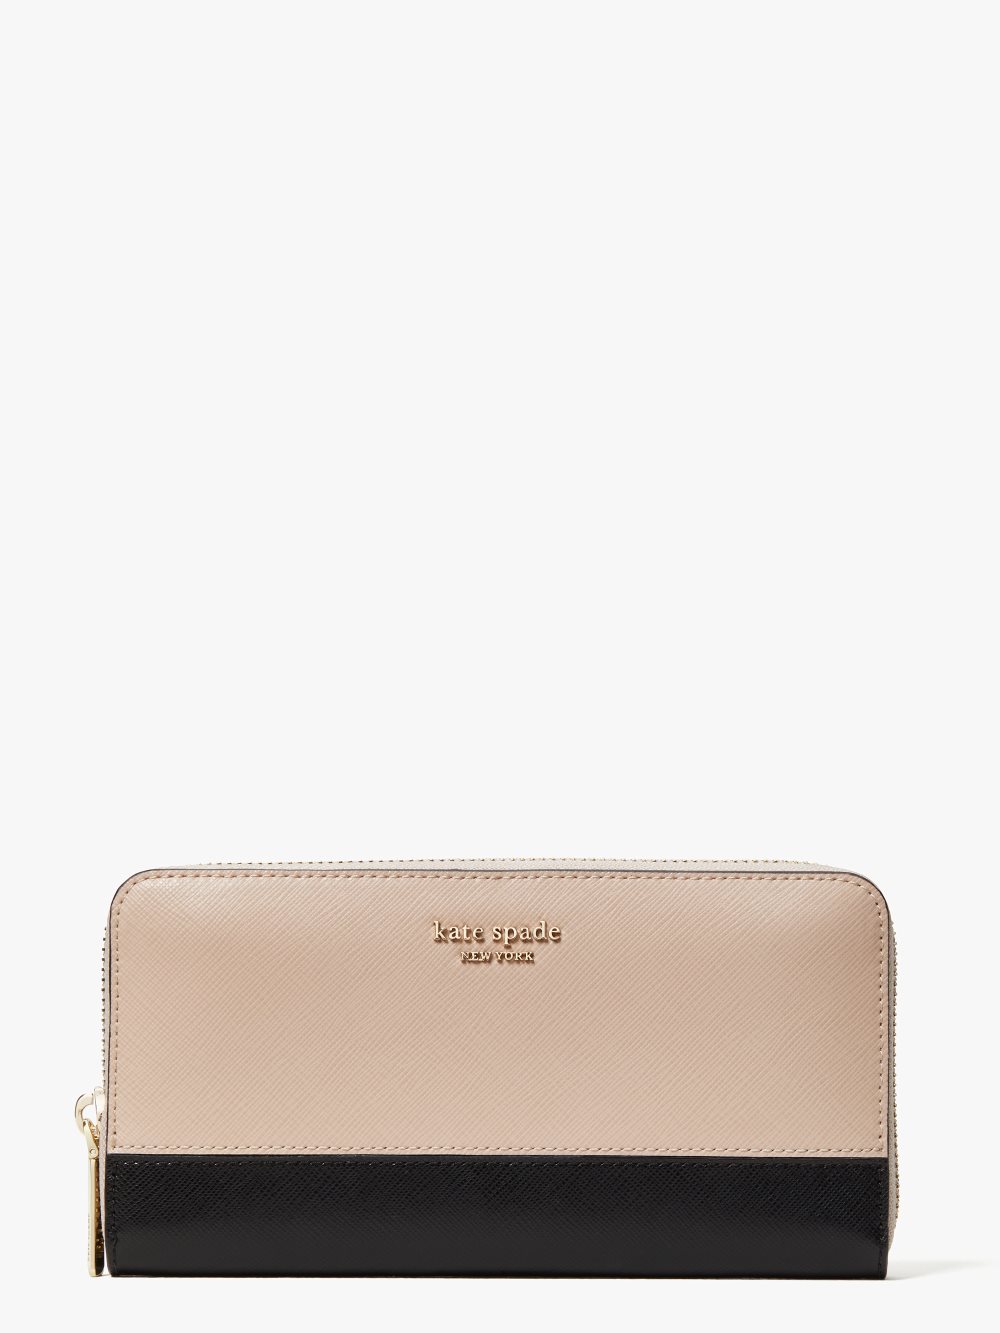 Women's warm beige/black spencer zip-around continental wallet | Kate Spade